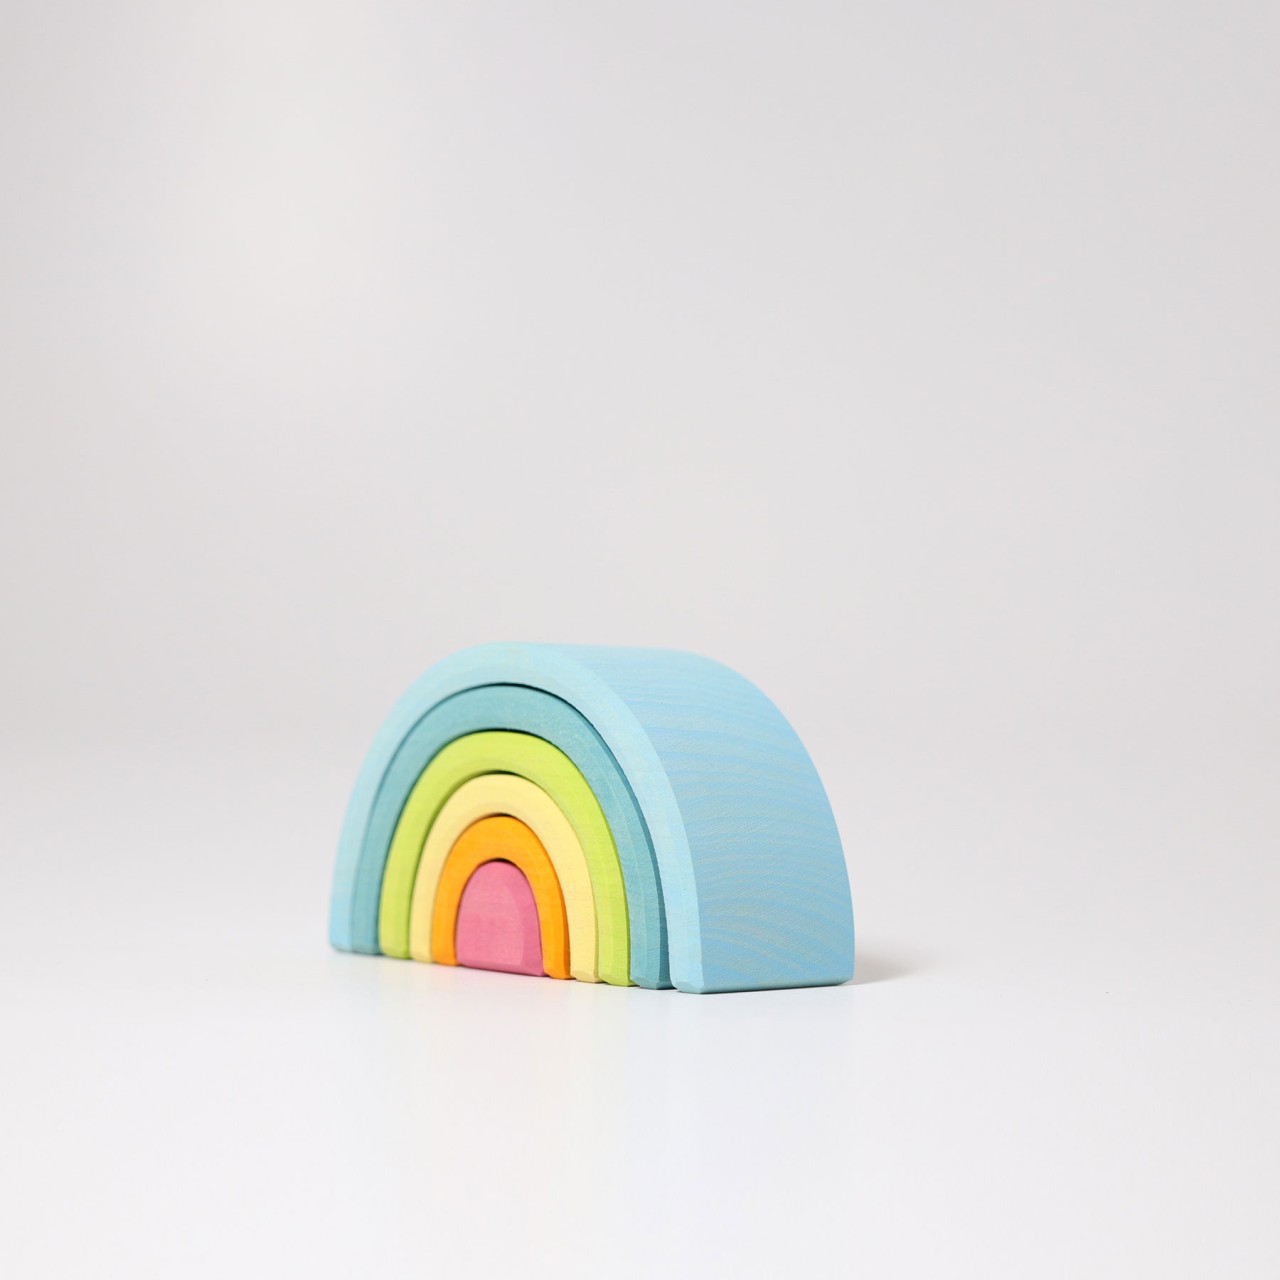 GRIMM'S Regenbogen klein, pastell für Kinder ab 3 Jahren